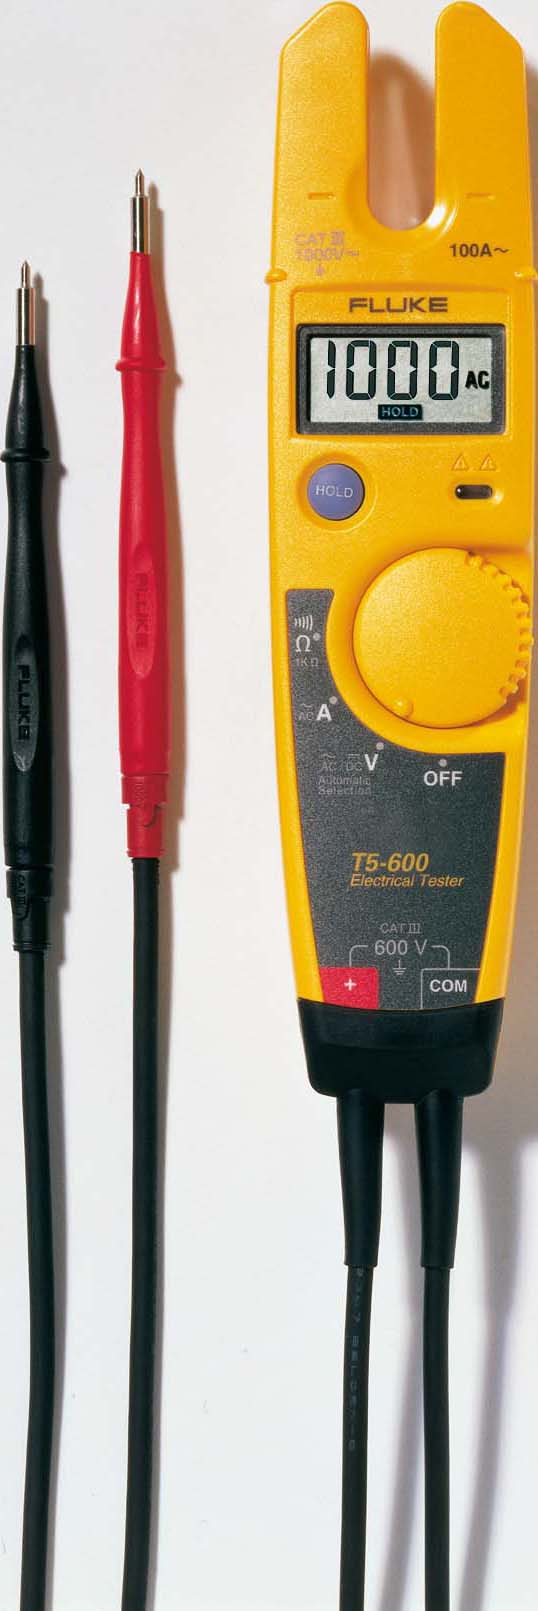 Fluke Spg./Strom+Durchgangtester automatisch T5-600      EUR1